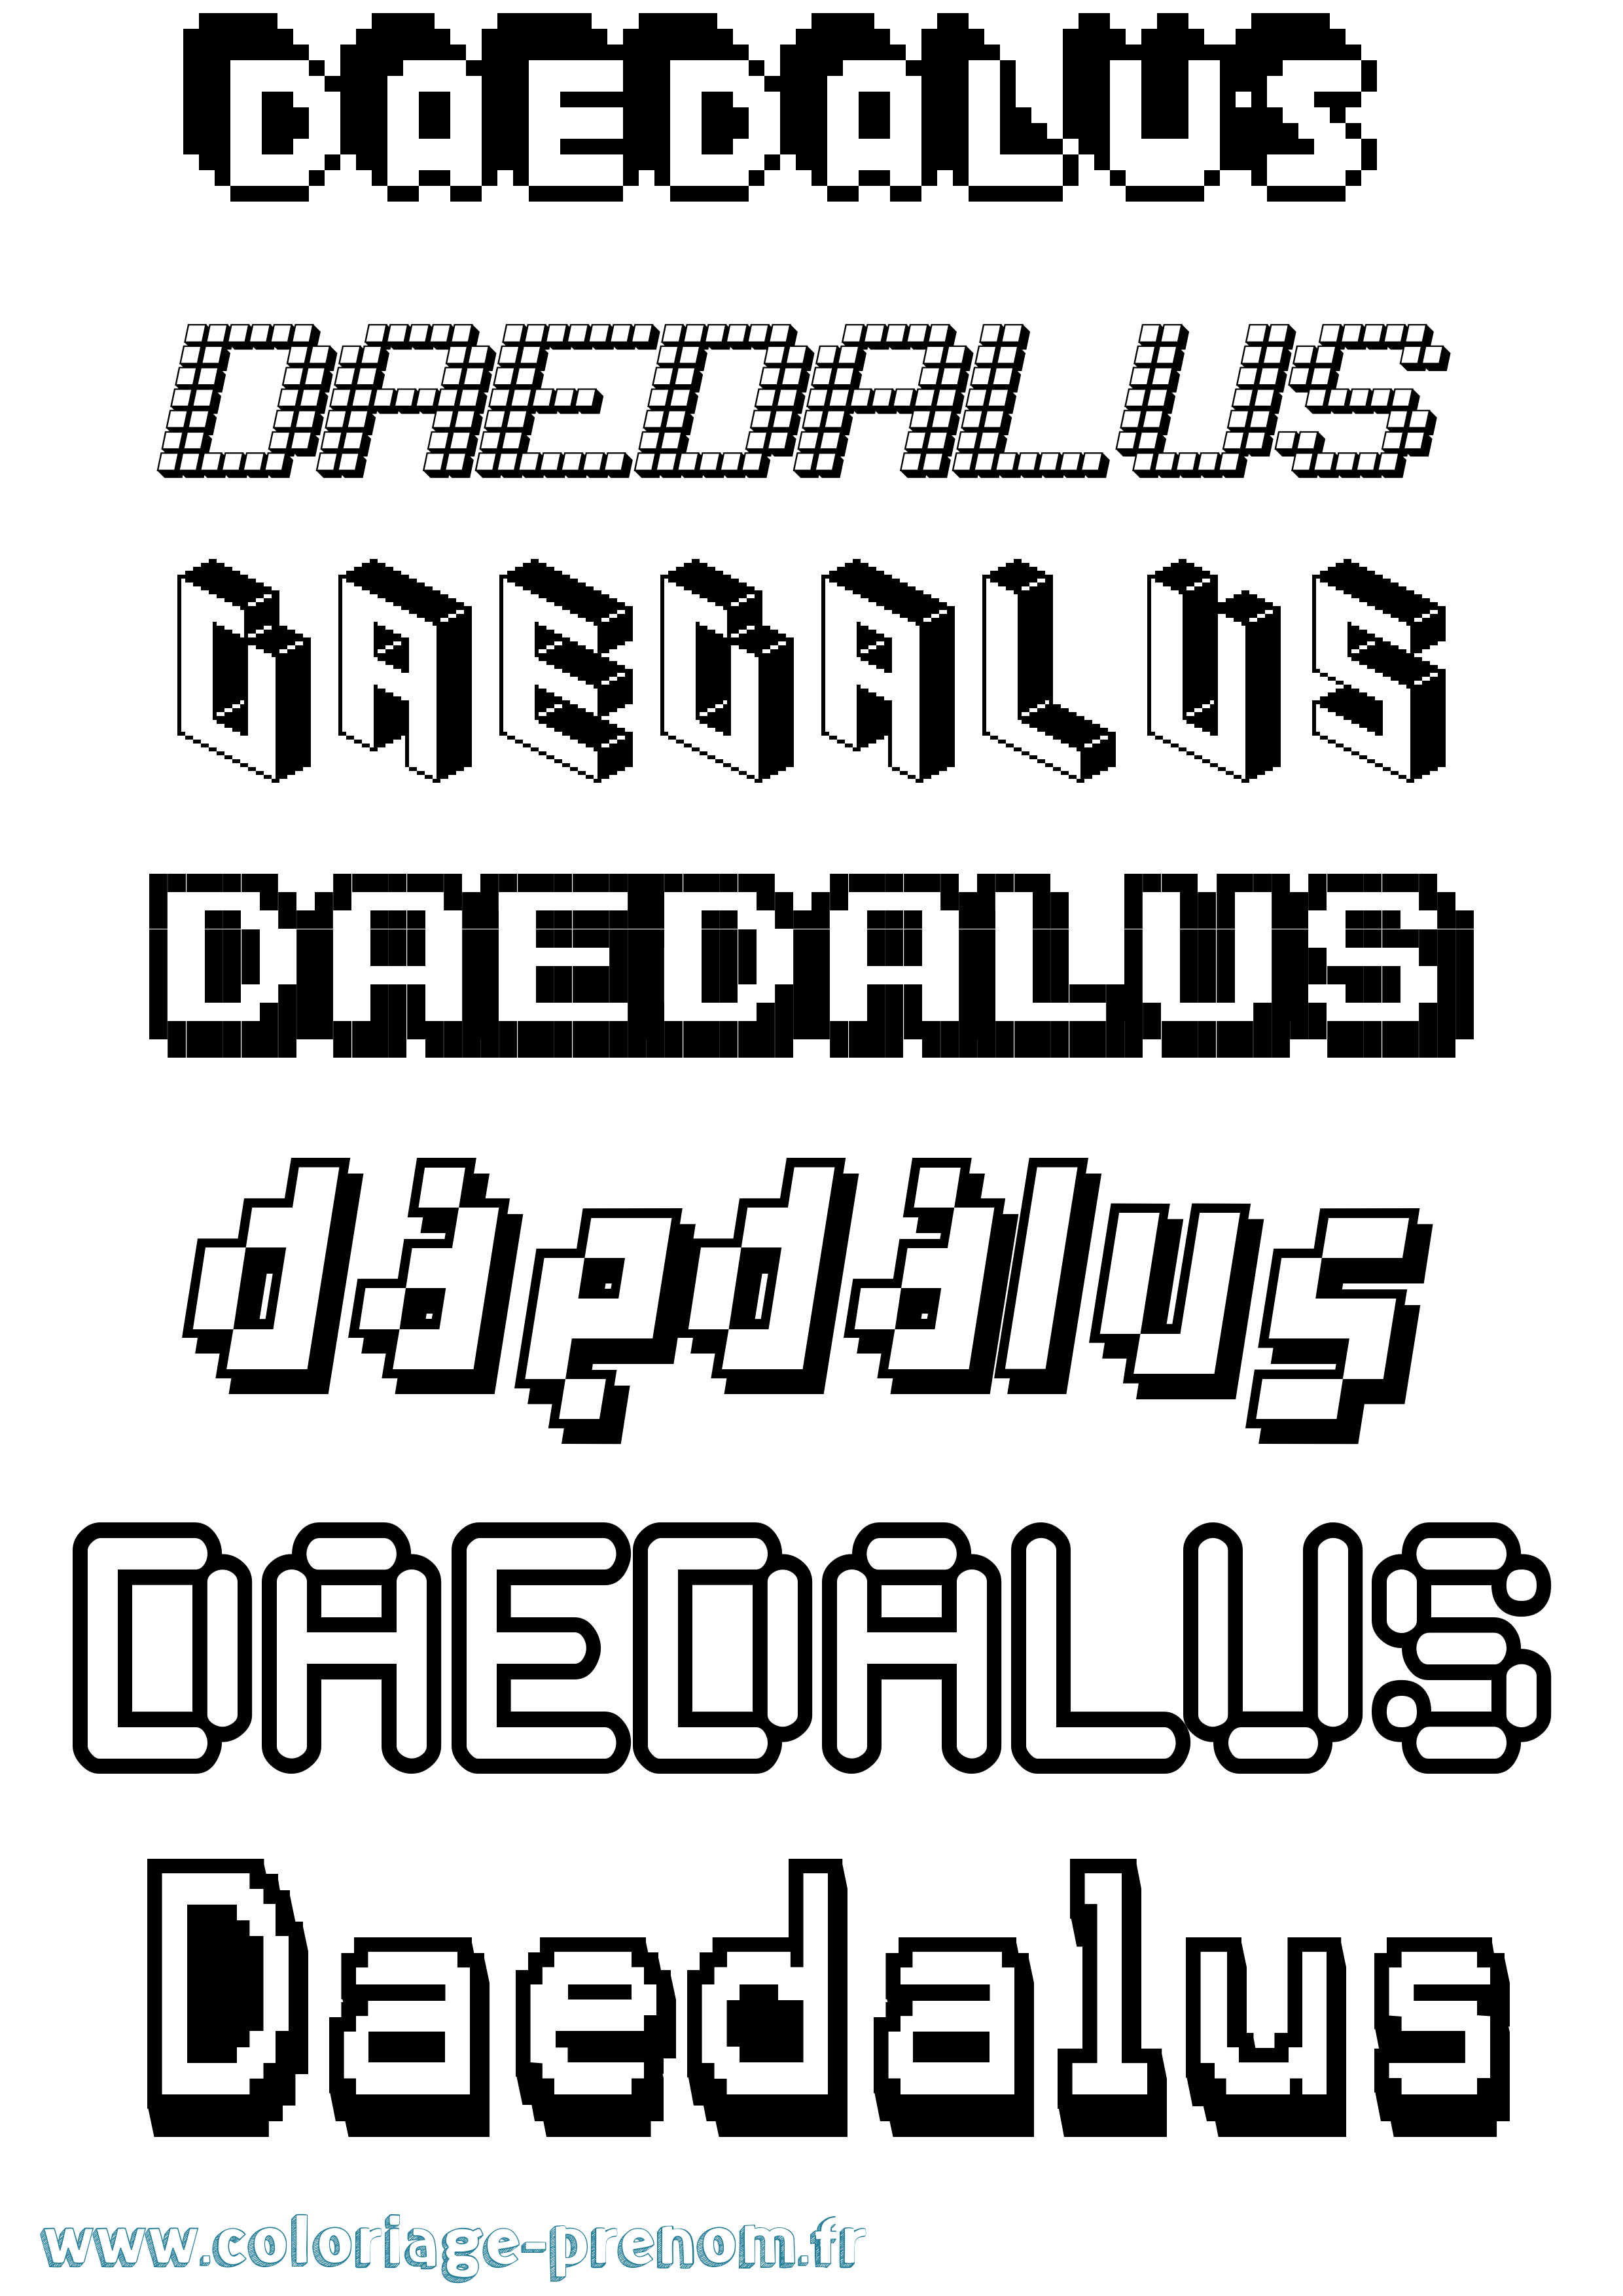 Coloriage prénom Daedalus Pixel